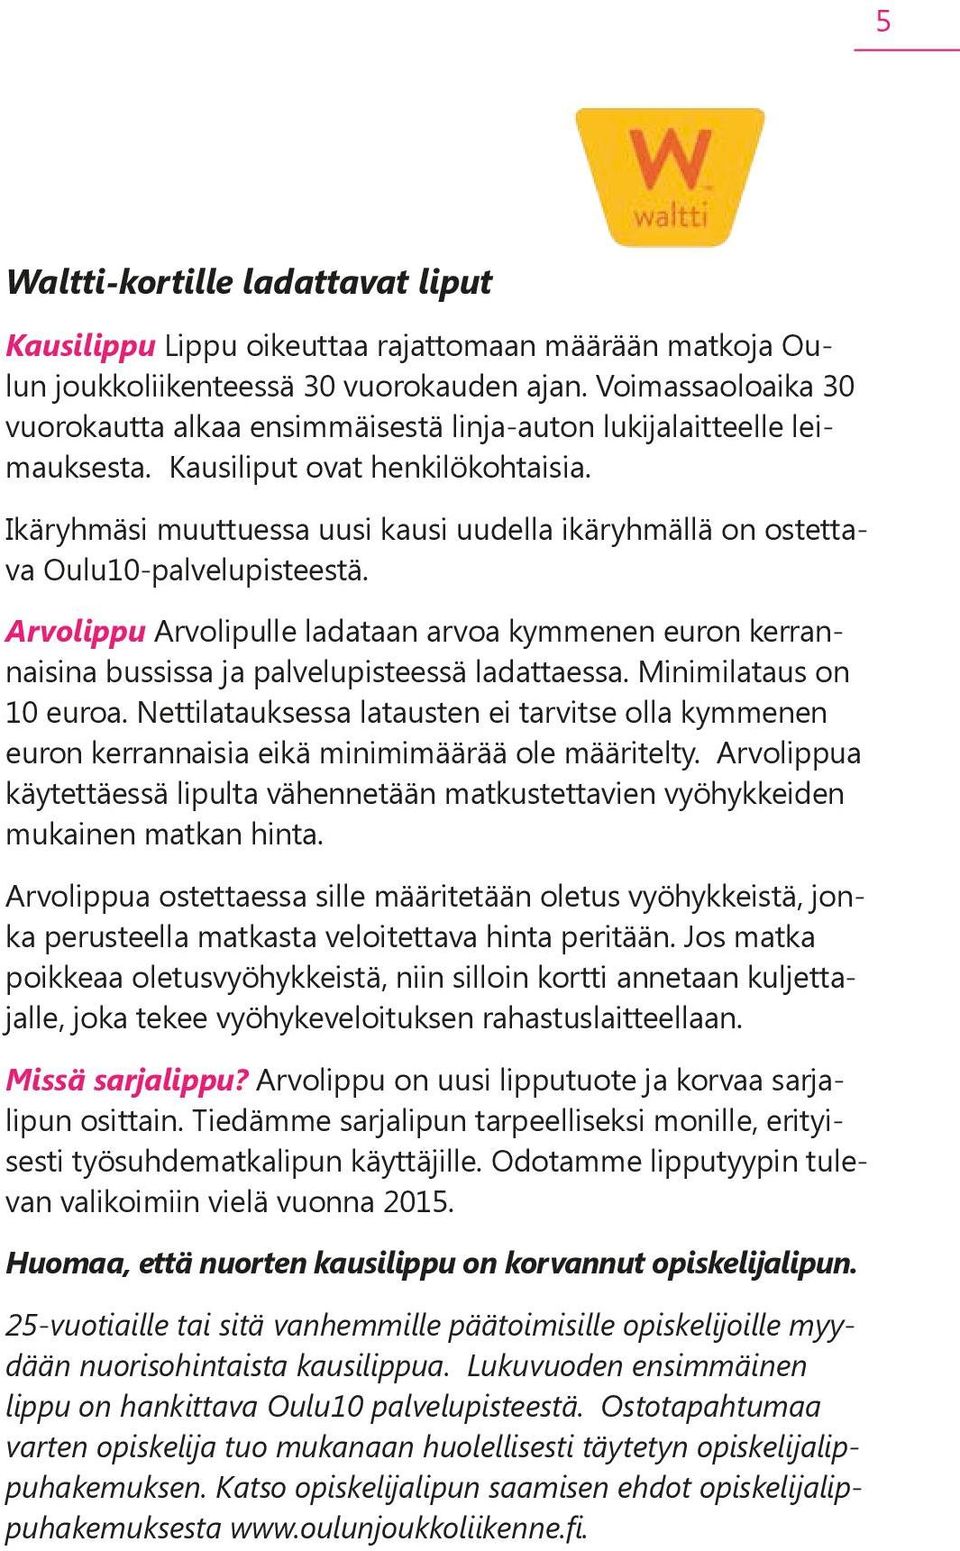 Ikäryhmäsi muuttuessa uusi kausi uudella ikäryhmällä on ostettava Oulu10-palvelupisteestä. Arvolippu Arvolipulle ladataan arvoa kymmenen euron kerrannaisina bussissa ja palvelupisteessä ladattaessa.